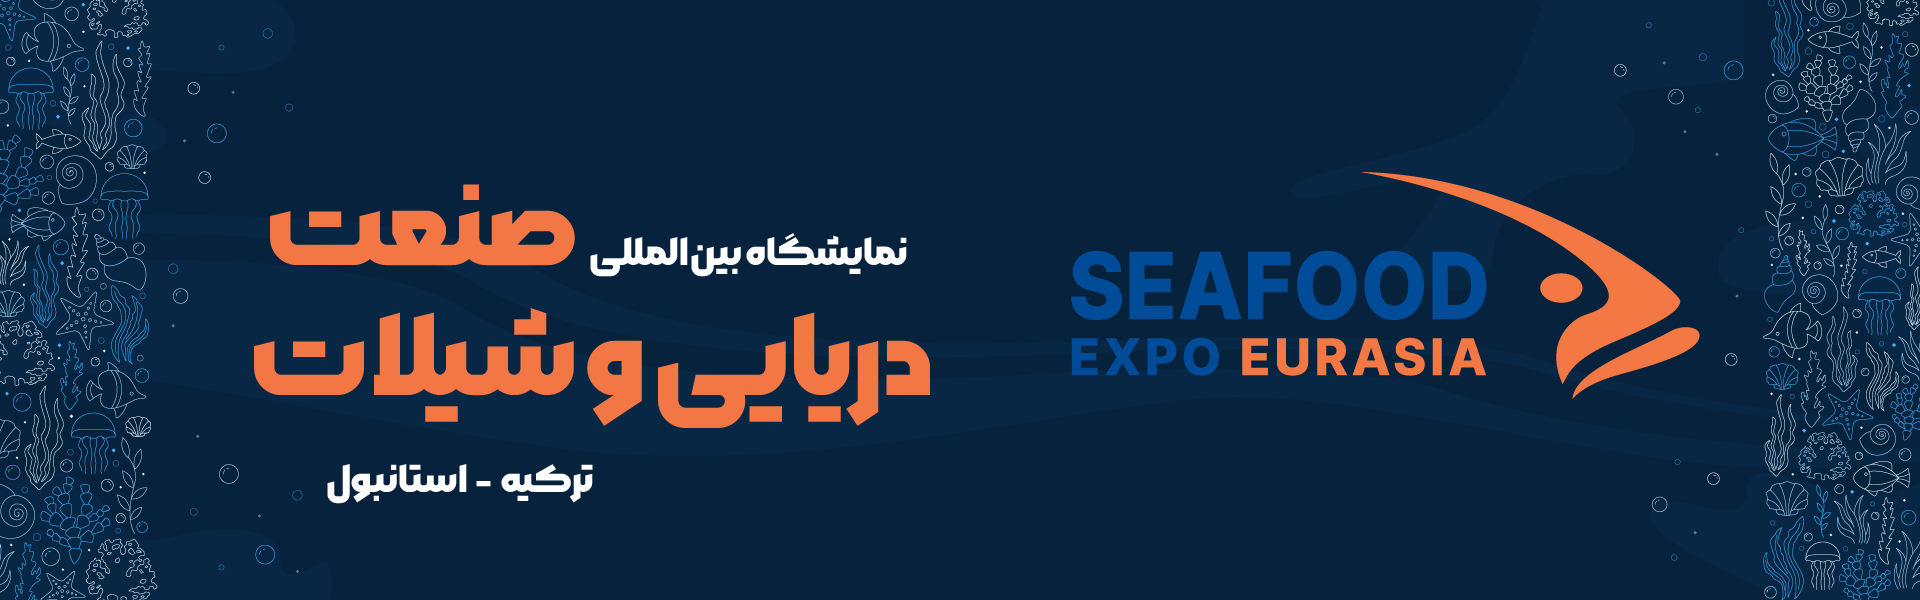 نمایشگاه بین المللی صنعت دریایی و شیلات (SEAFOOD EXPO EURASIA) استانبول ترکیه